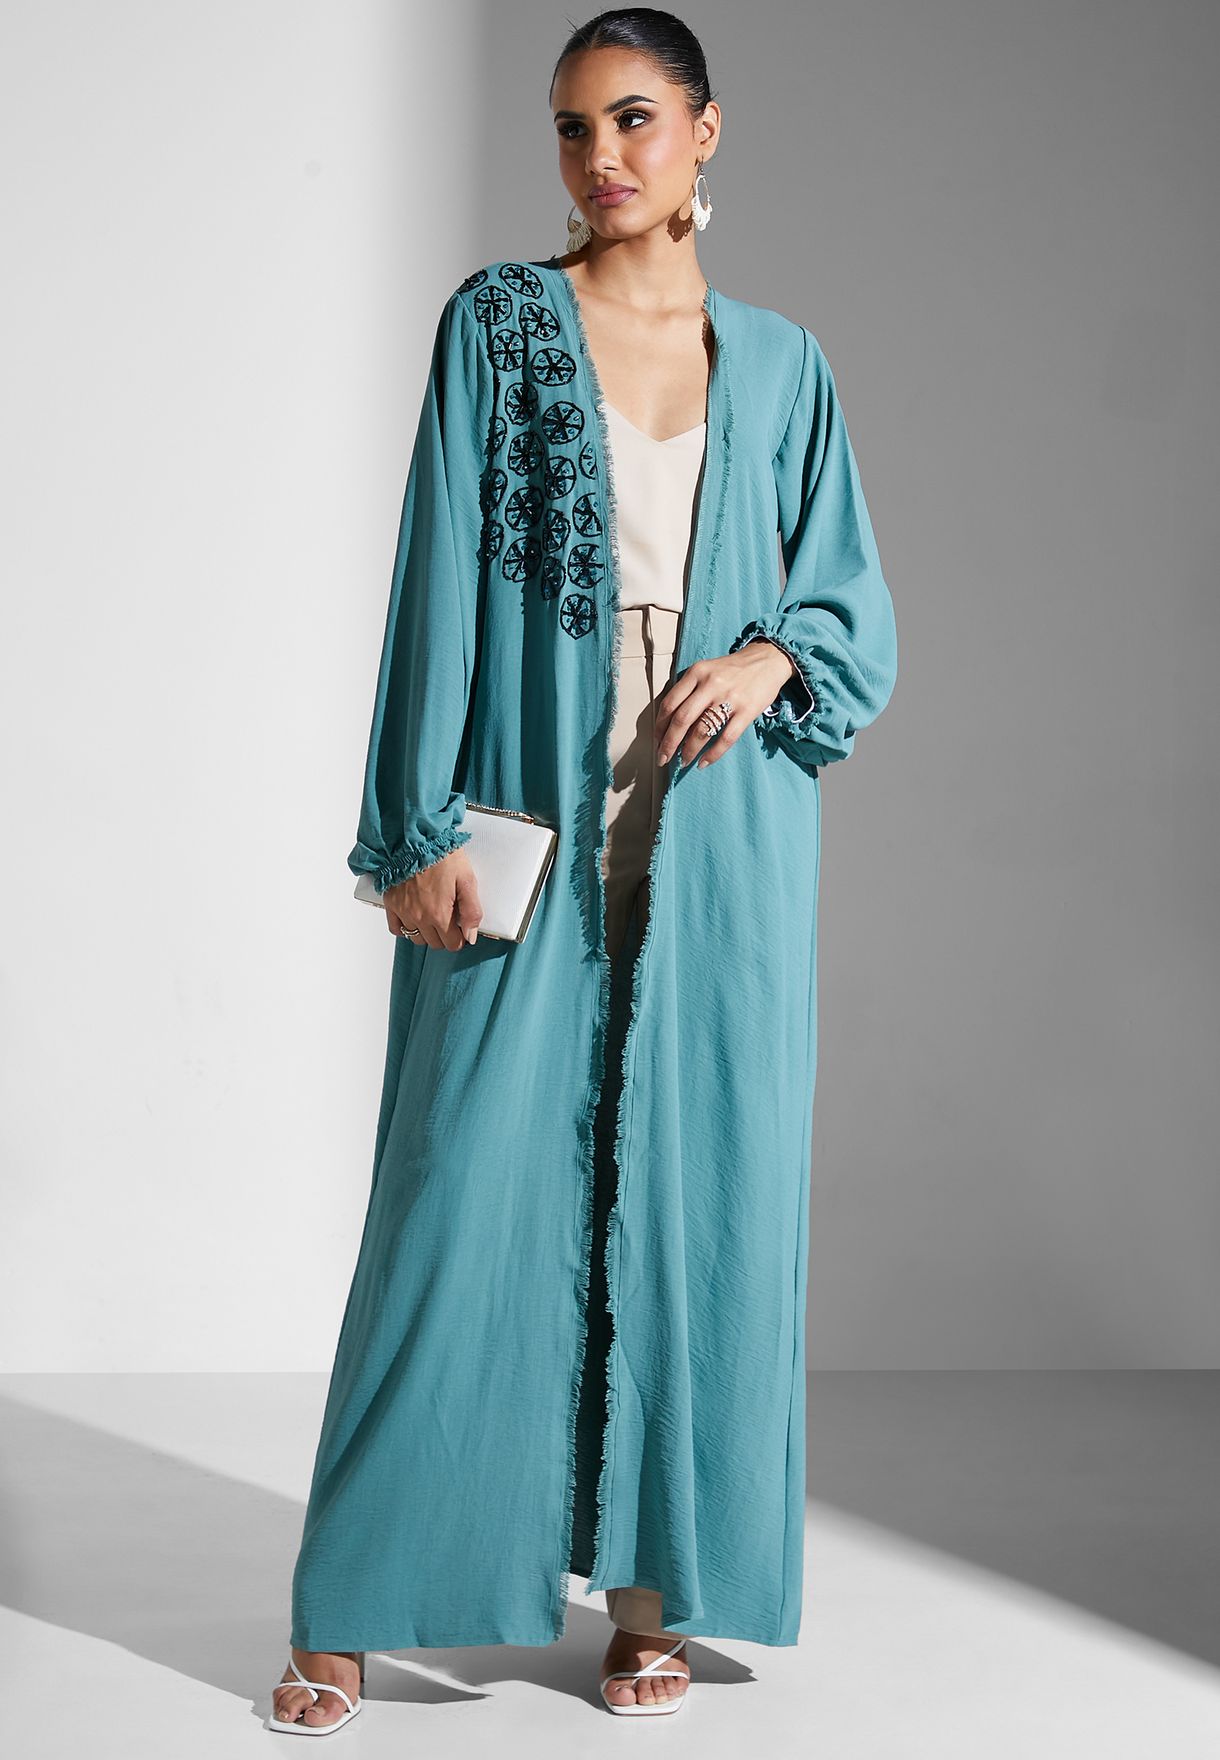 Embroidered Stylish Abaya